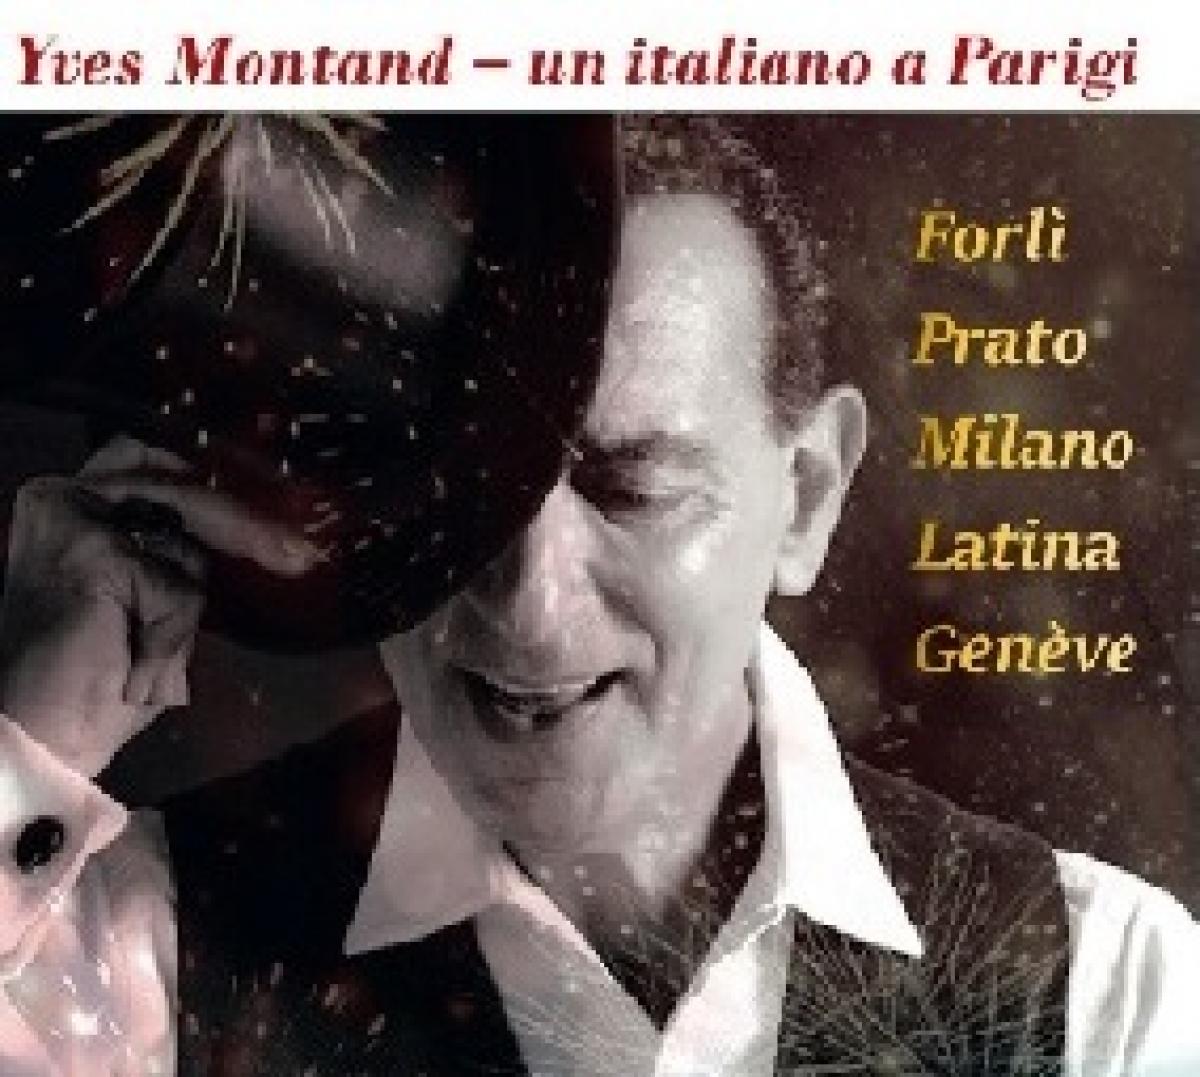 Blog – Yves Montand – Forlì et Prato 24-26 novembre